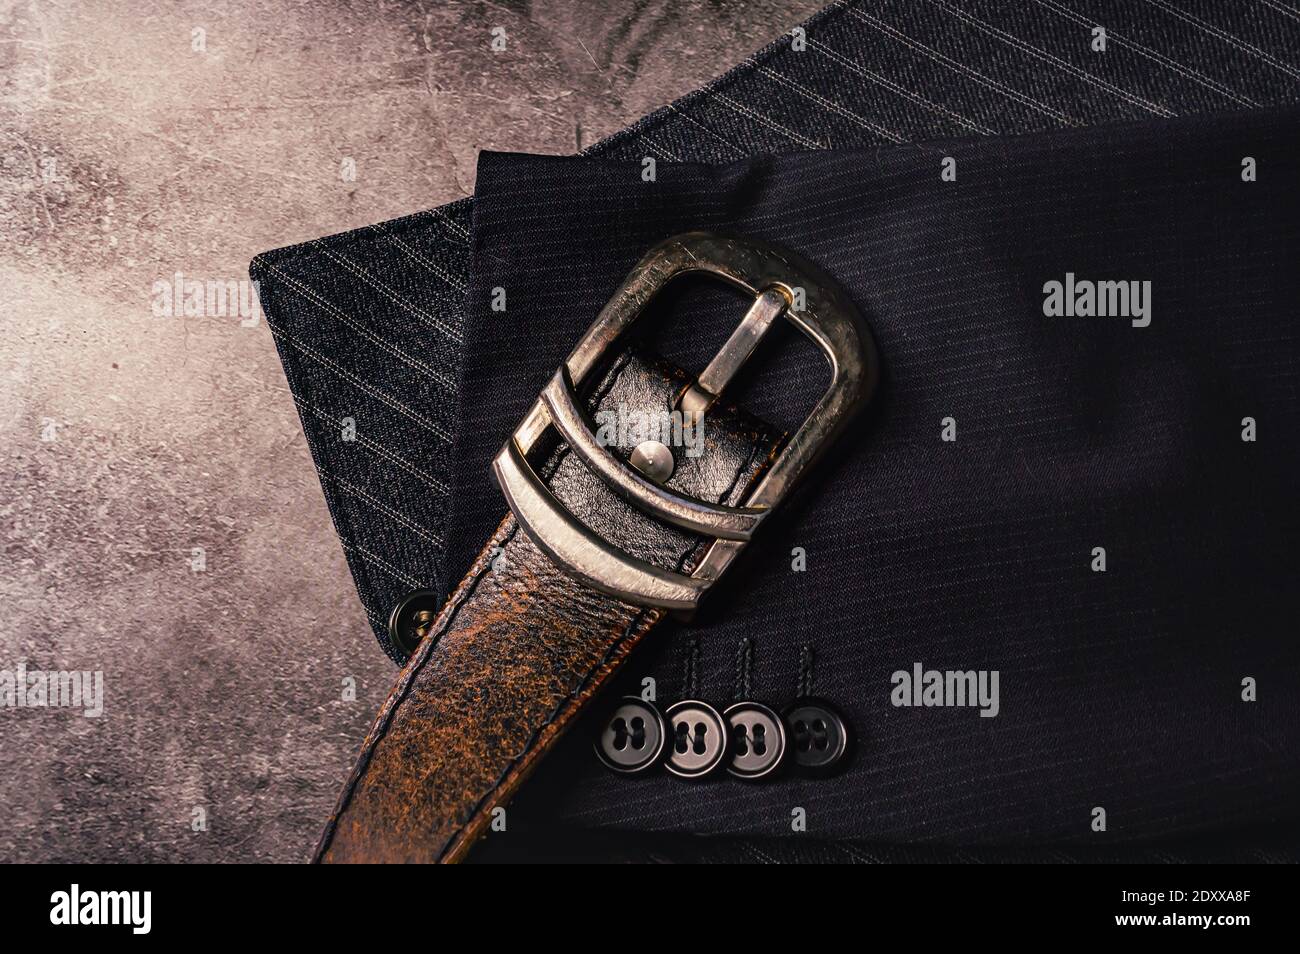 Immagine di una cintura in pelle con fibbia cromata sopra le parti di un  gilet a righe grigie e. parte di un manicotto di una camicia Foto stock -  Alamy